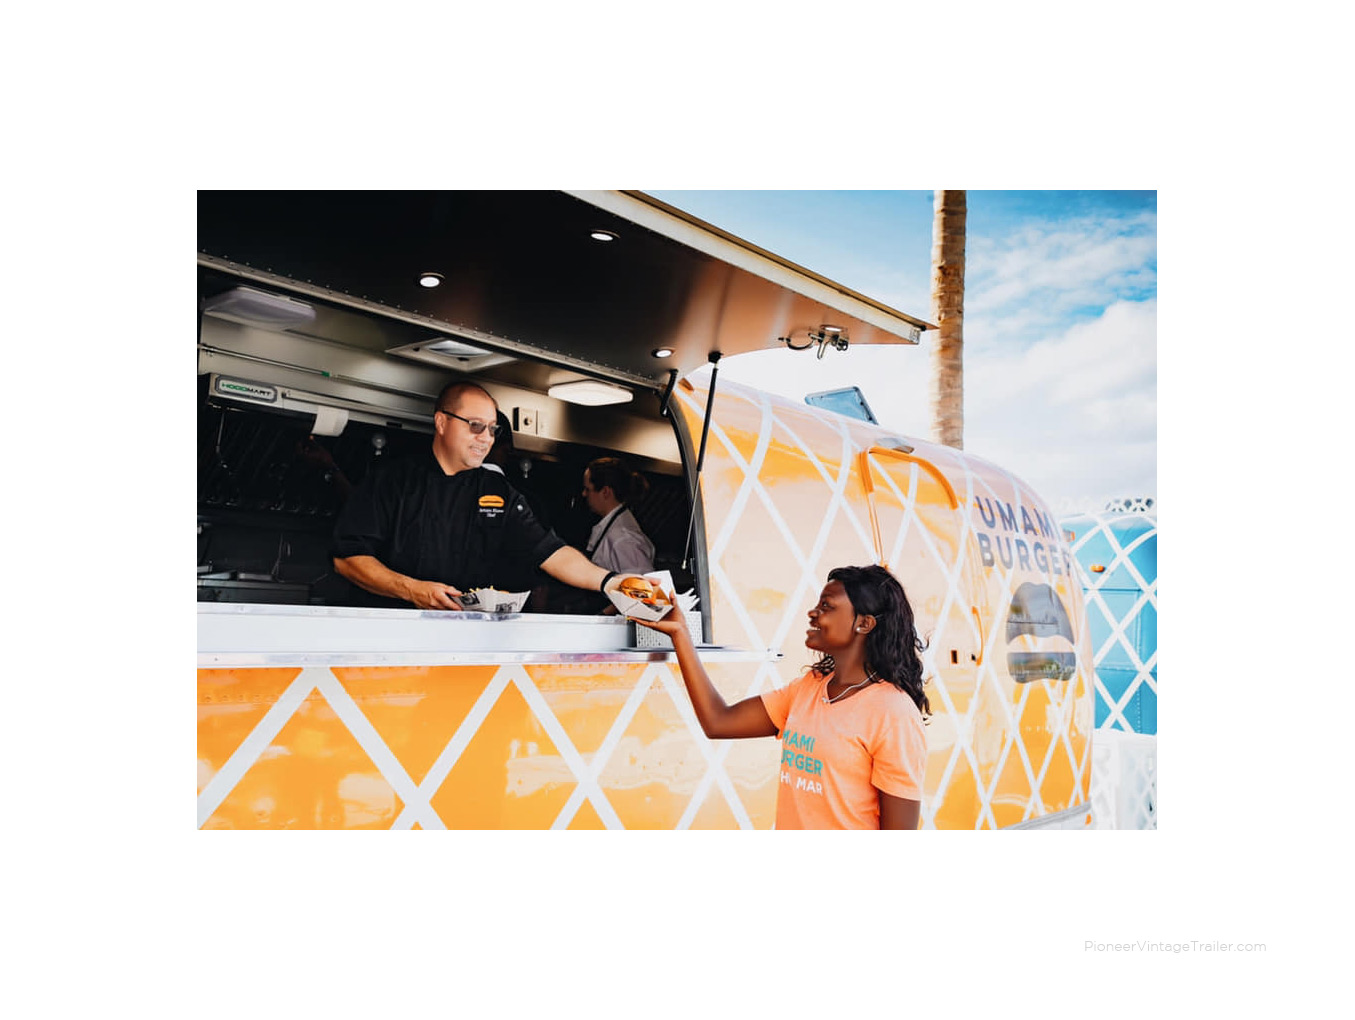 Airstream Umami Burger in Bahamas - food trailer